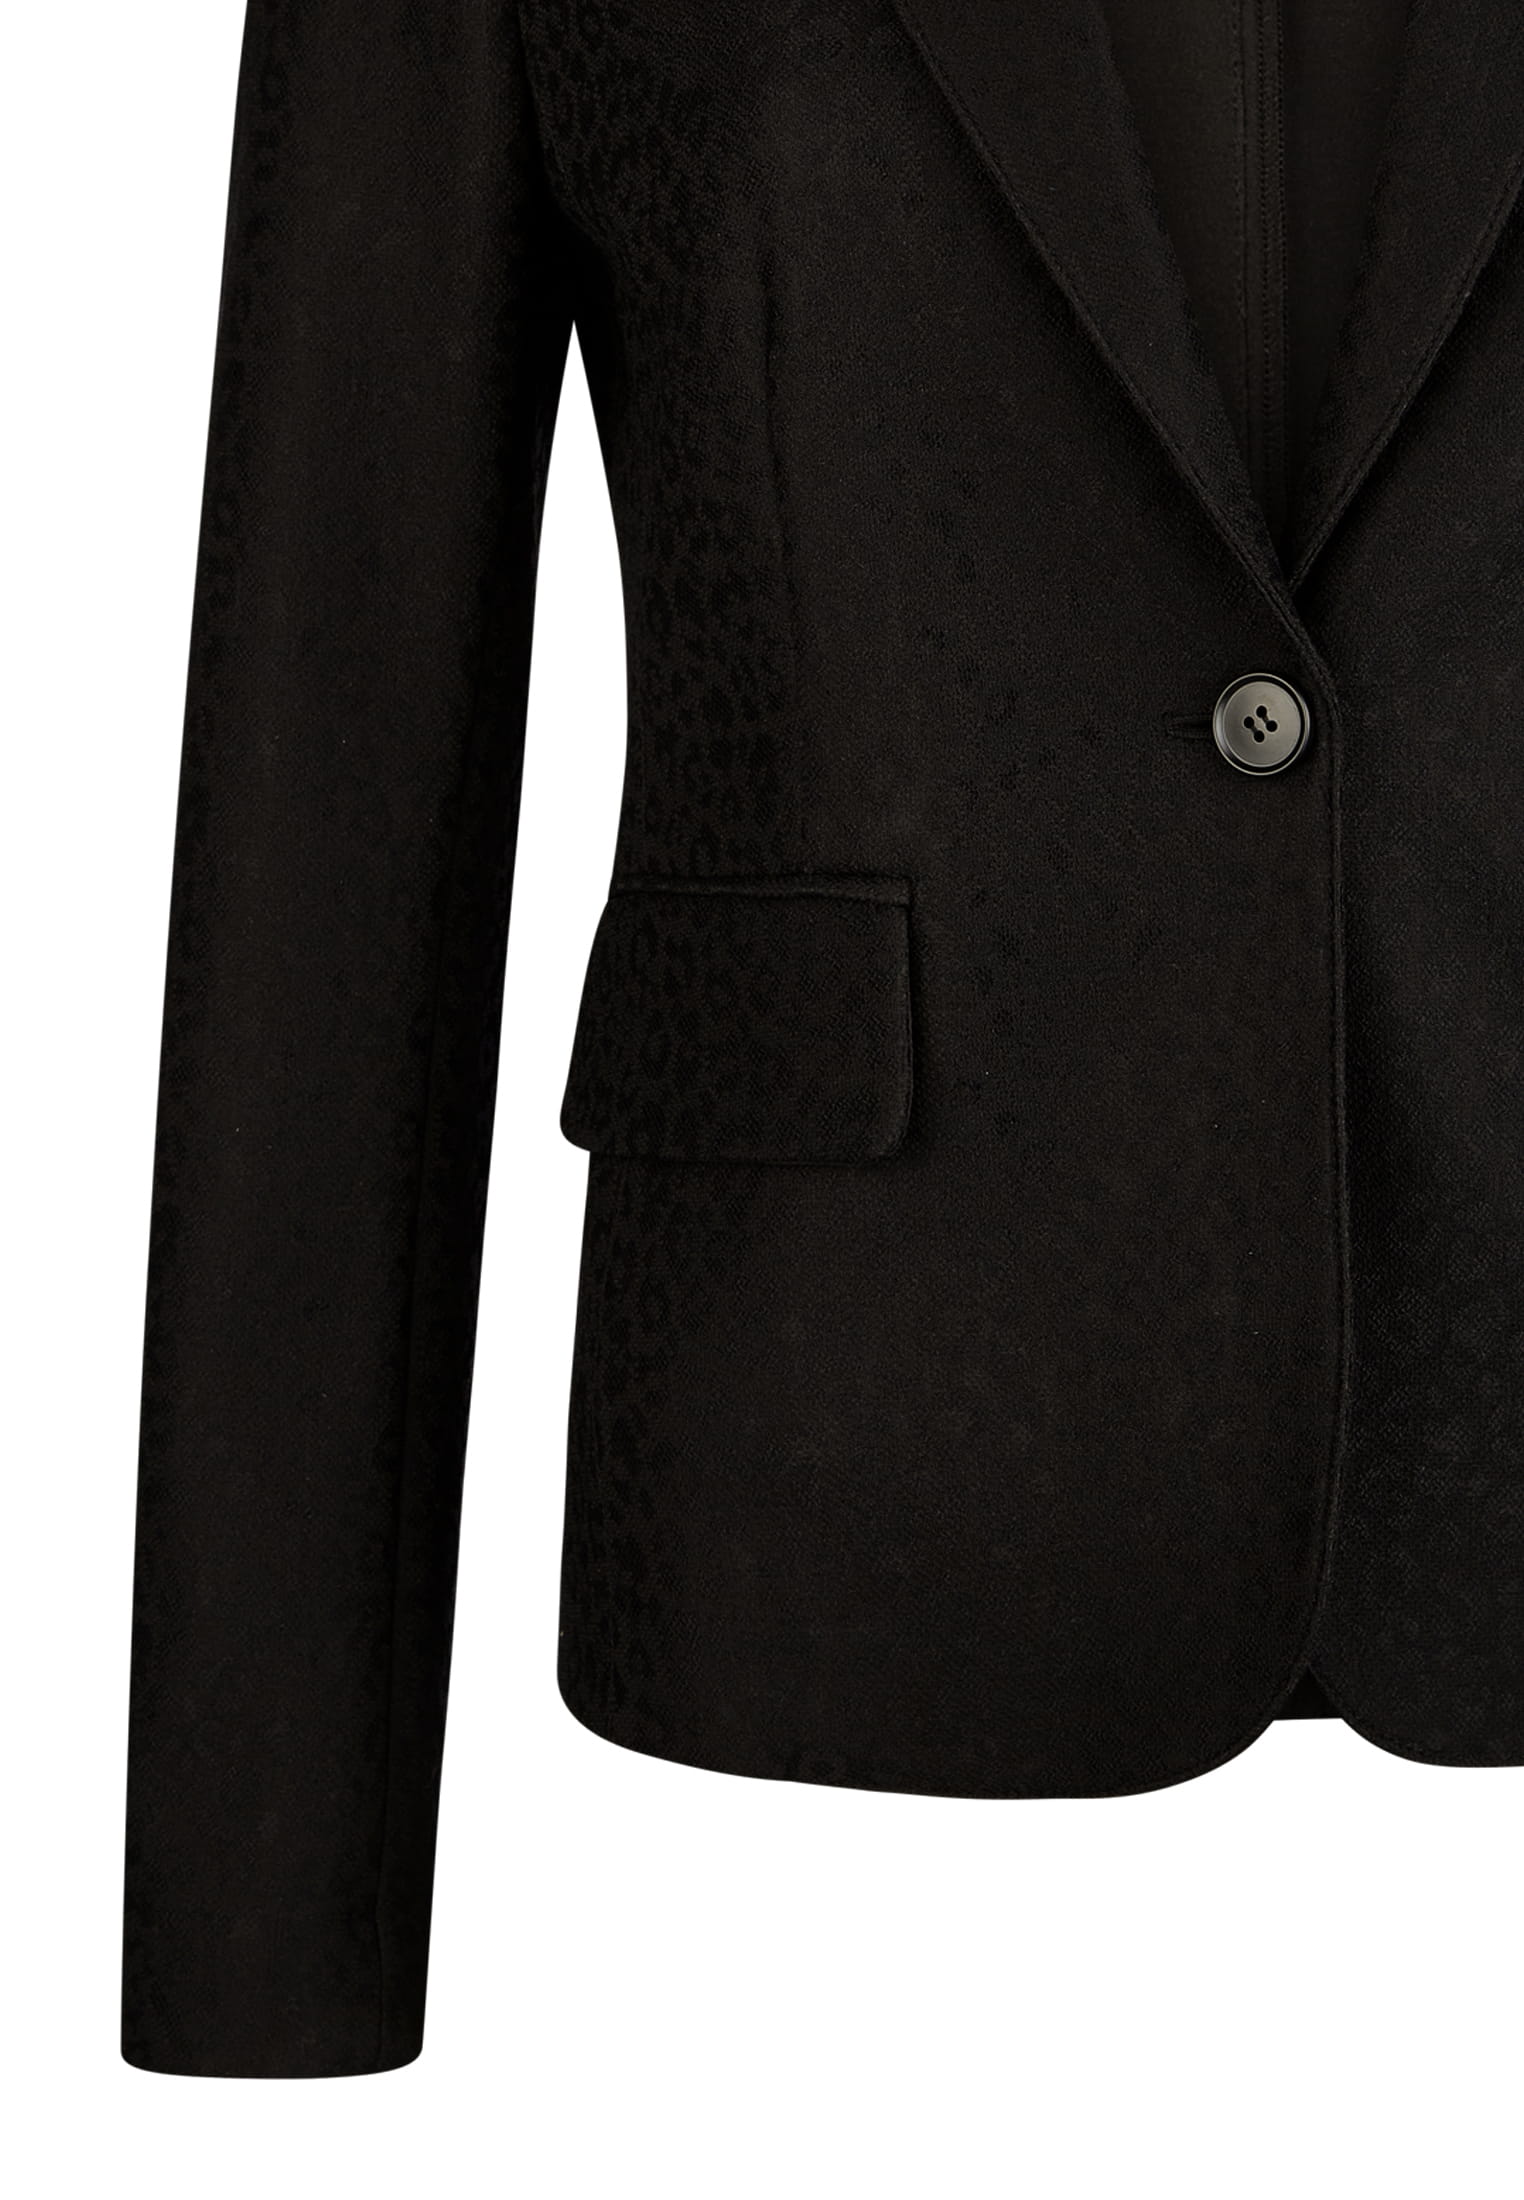 Bonded jersey blazer | Blazer & Jackets | Fashion